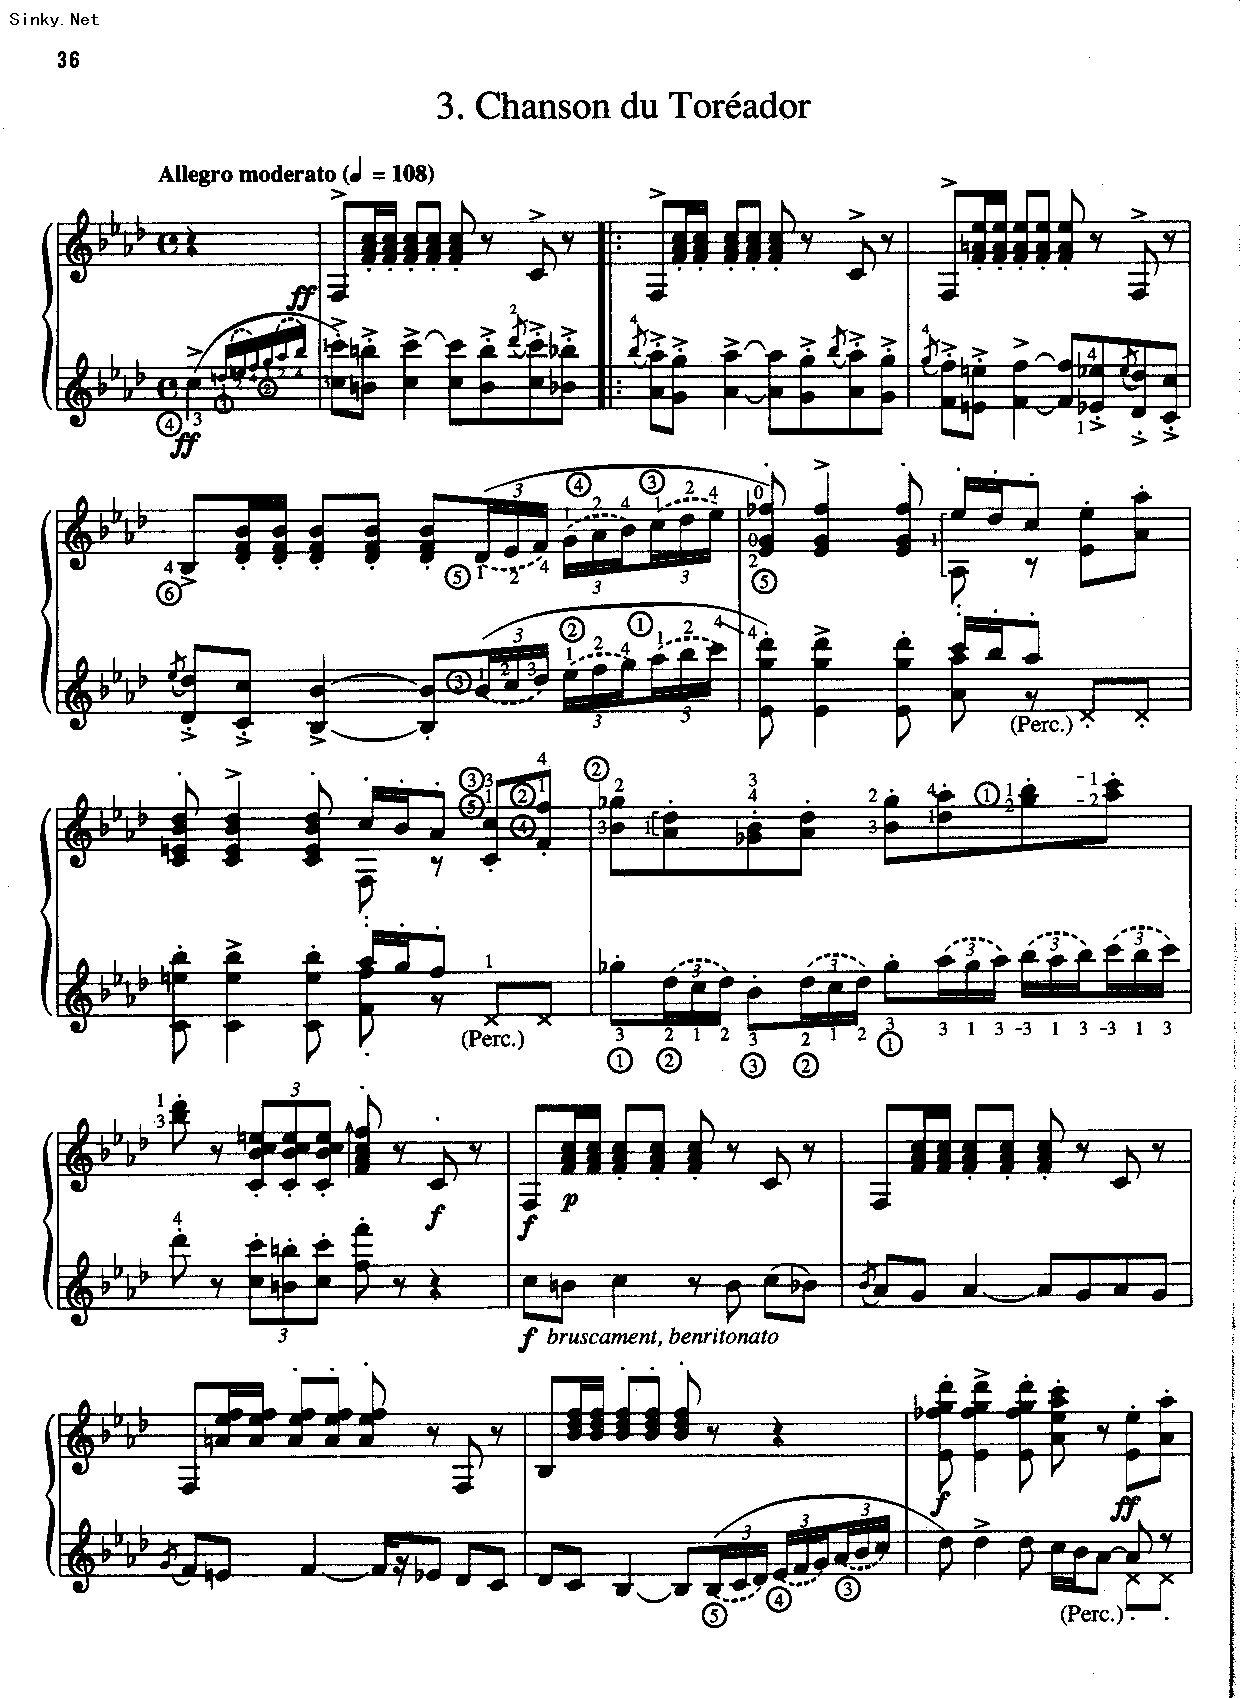 卡门-哈巴涅拉舞曲-好听较完美版-爱情是一只自由的鸟儿五线谱预览4-钢琴谱文件（五线谱、双手简谱、数字谱、Midi、PDF）免费下载